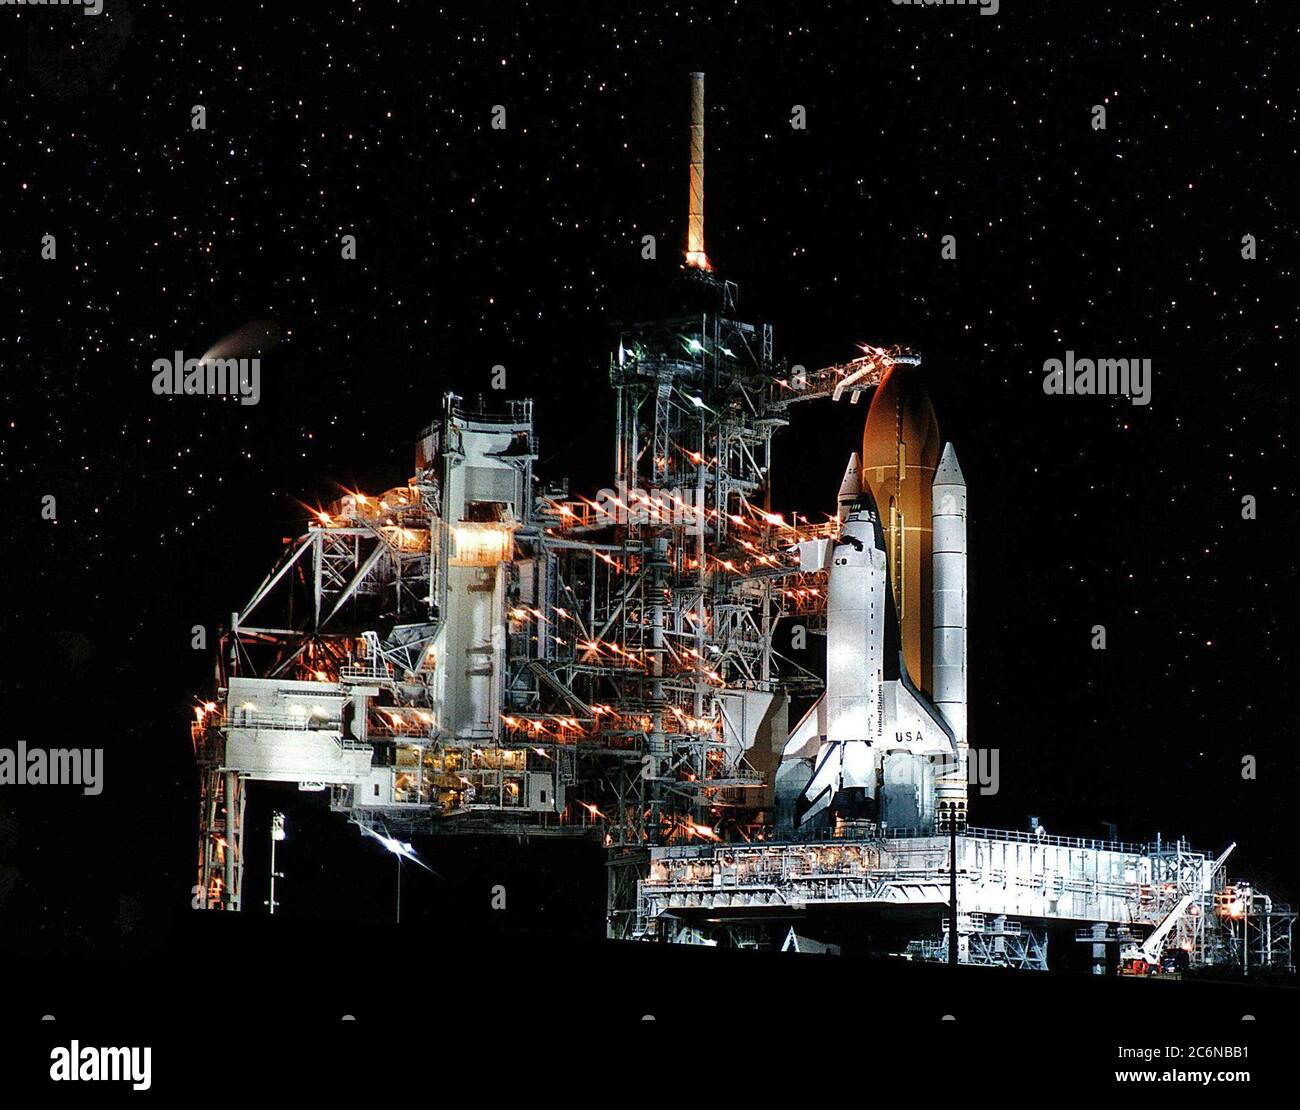 La navetta spaziale Columbia, presto disponibile, riceve una visita in volo dalla Comet Hale-Bopp (mostrata come la striscia al centro di sinistra) in attesa del lancio della missione STS-83. Questa foto è stata scattata la notte prima del previsto liftoff il 4 aprile 1997. La struttura di servizio rotante sul Launch Pad 39A è stata spostata indietro prima dell'inizio delle operazioni per alimentare il serbatoio esterno. L'obiettivo primario del volo STS-83 è quello di far funzionare il Microcitity Science Laboratory-1 (MSL-1), che testerà alcuni hardware, strutture e procedure che saranno utilizzate sulla Stazione spaziale Internazionale Foto Stock